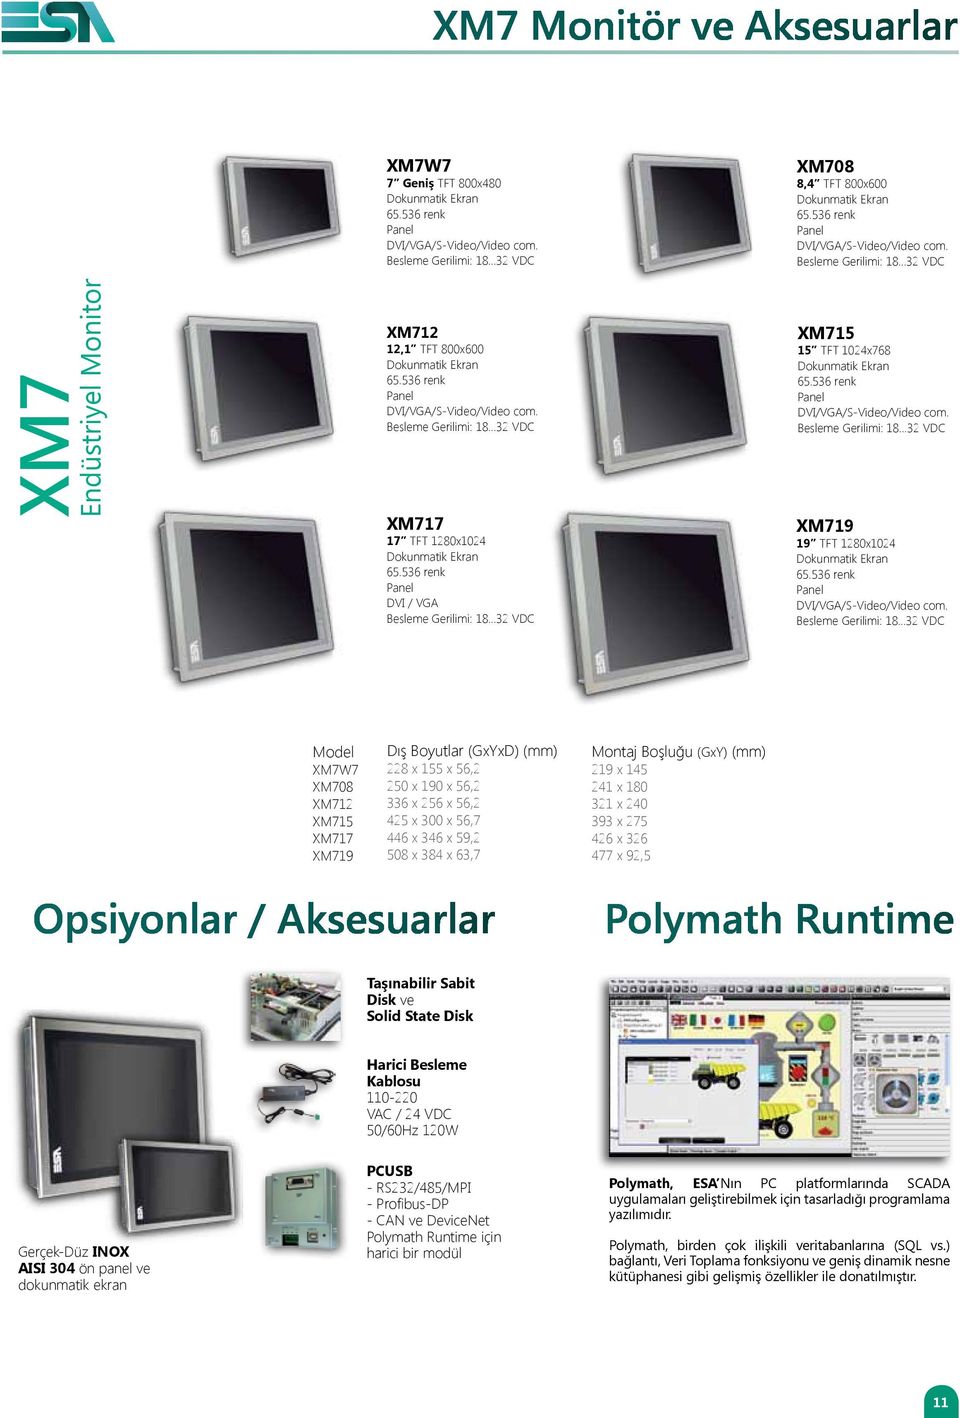 ..32 VDC XM7 Endüstriyel Monitor XM712 12,1 TFT 800x600 Dokunmatik Ekran Panel DVI/VGA/S-Video/Video com. Besleme Gerilimi: 18.